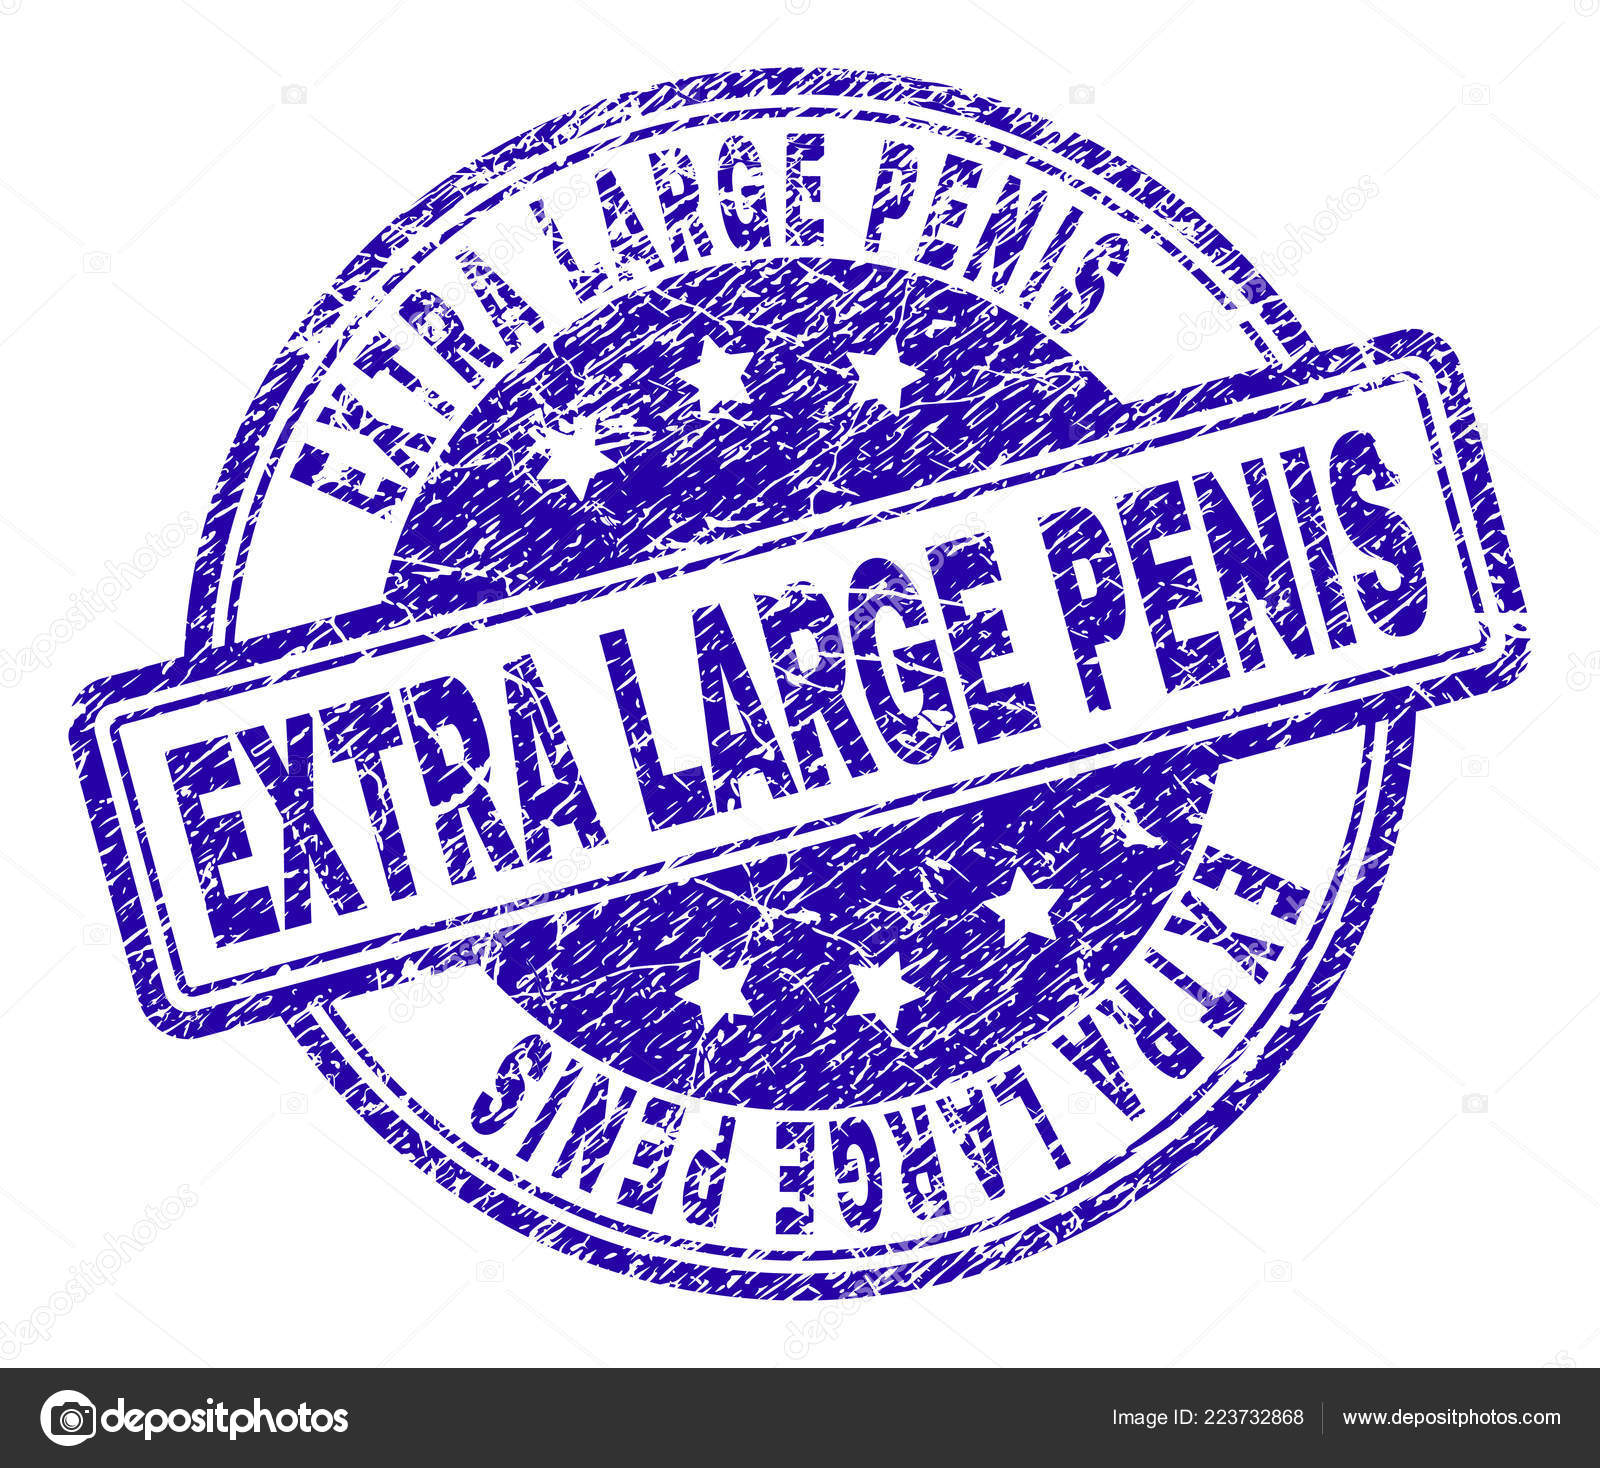 velký velký penis